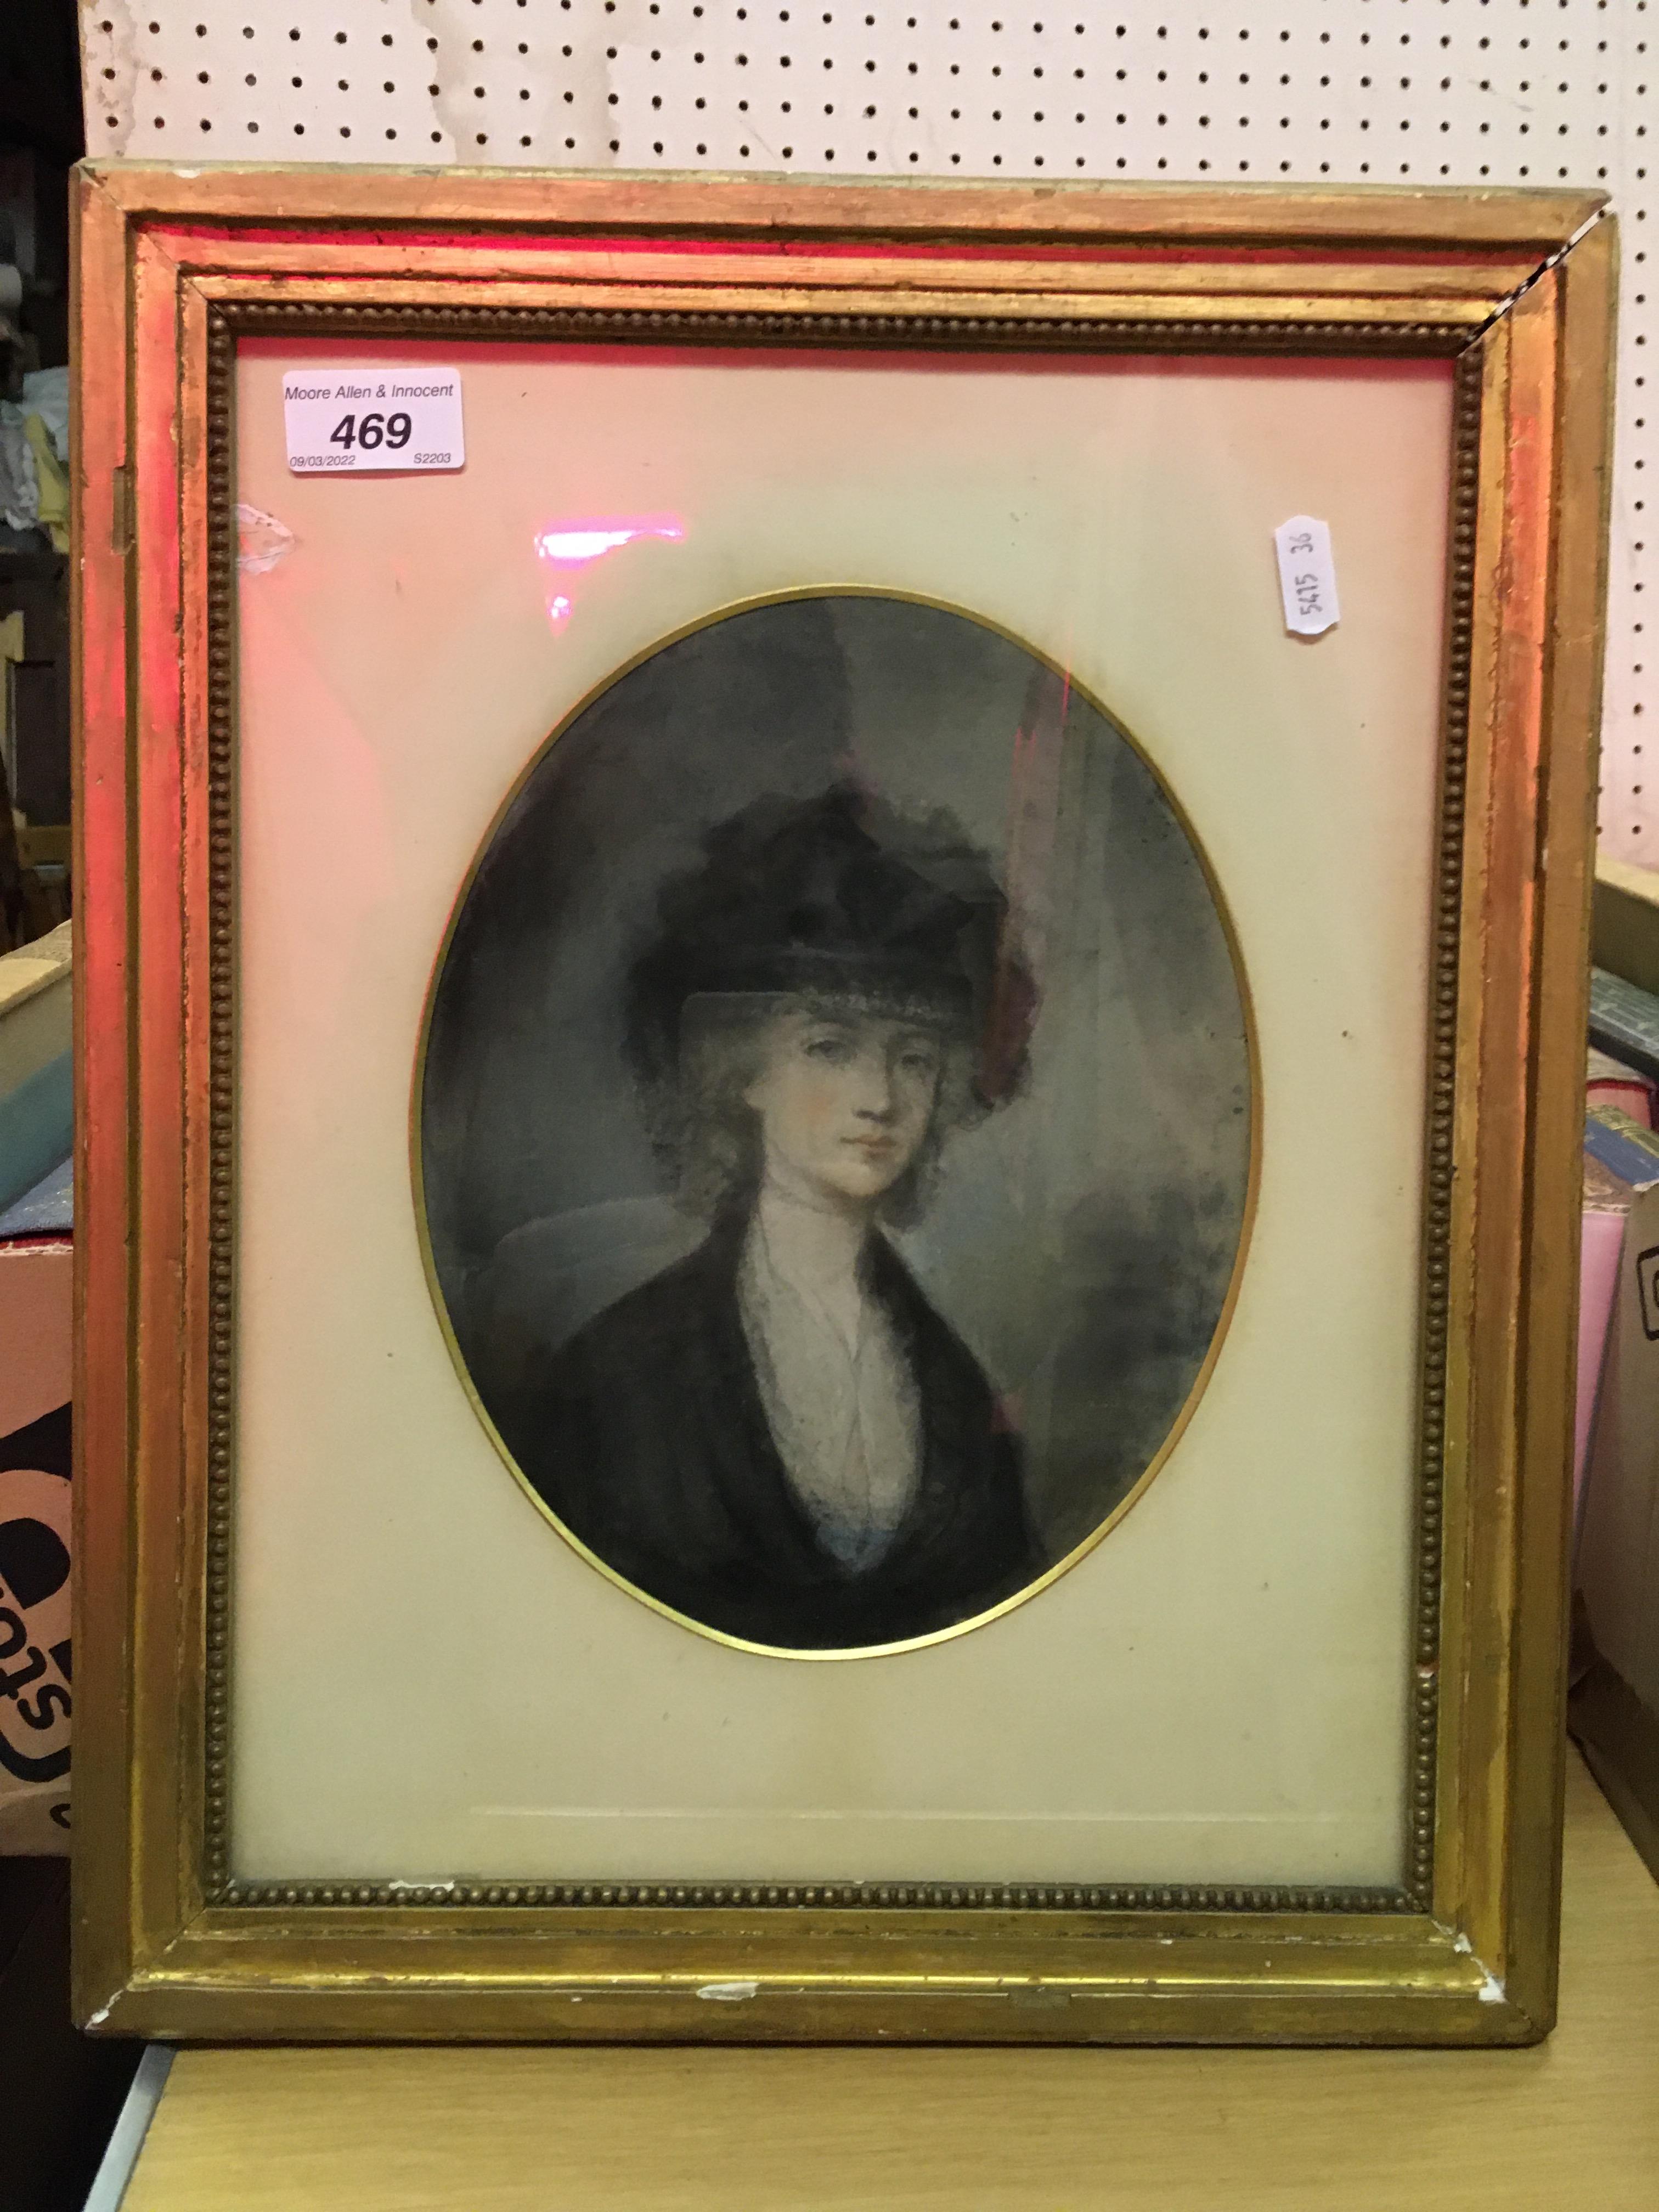 HUGH DOUGLAS HAMILTON (1739-1808) "Lady in black hat and lace trimmed dress" a portrait study,